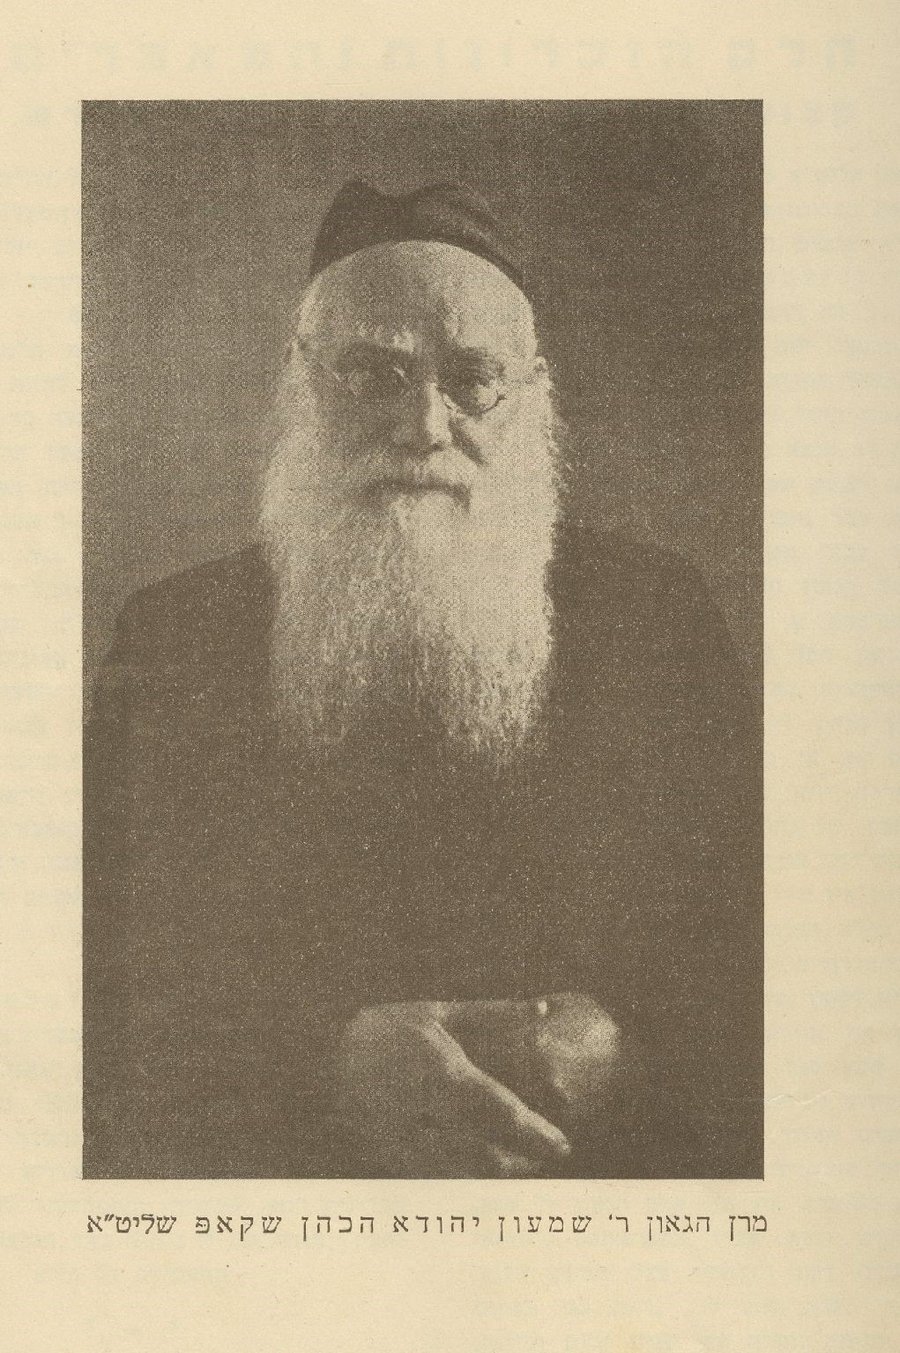 שער ספר היובל לכבוד רבי שמעון יהודא הכהן שקופ, ווילנא תרצ"ו (1936)